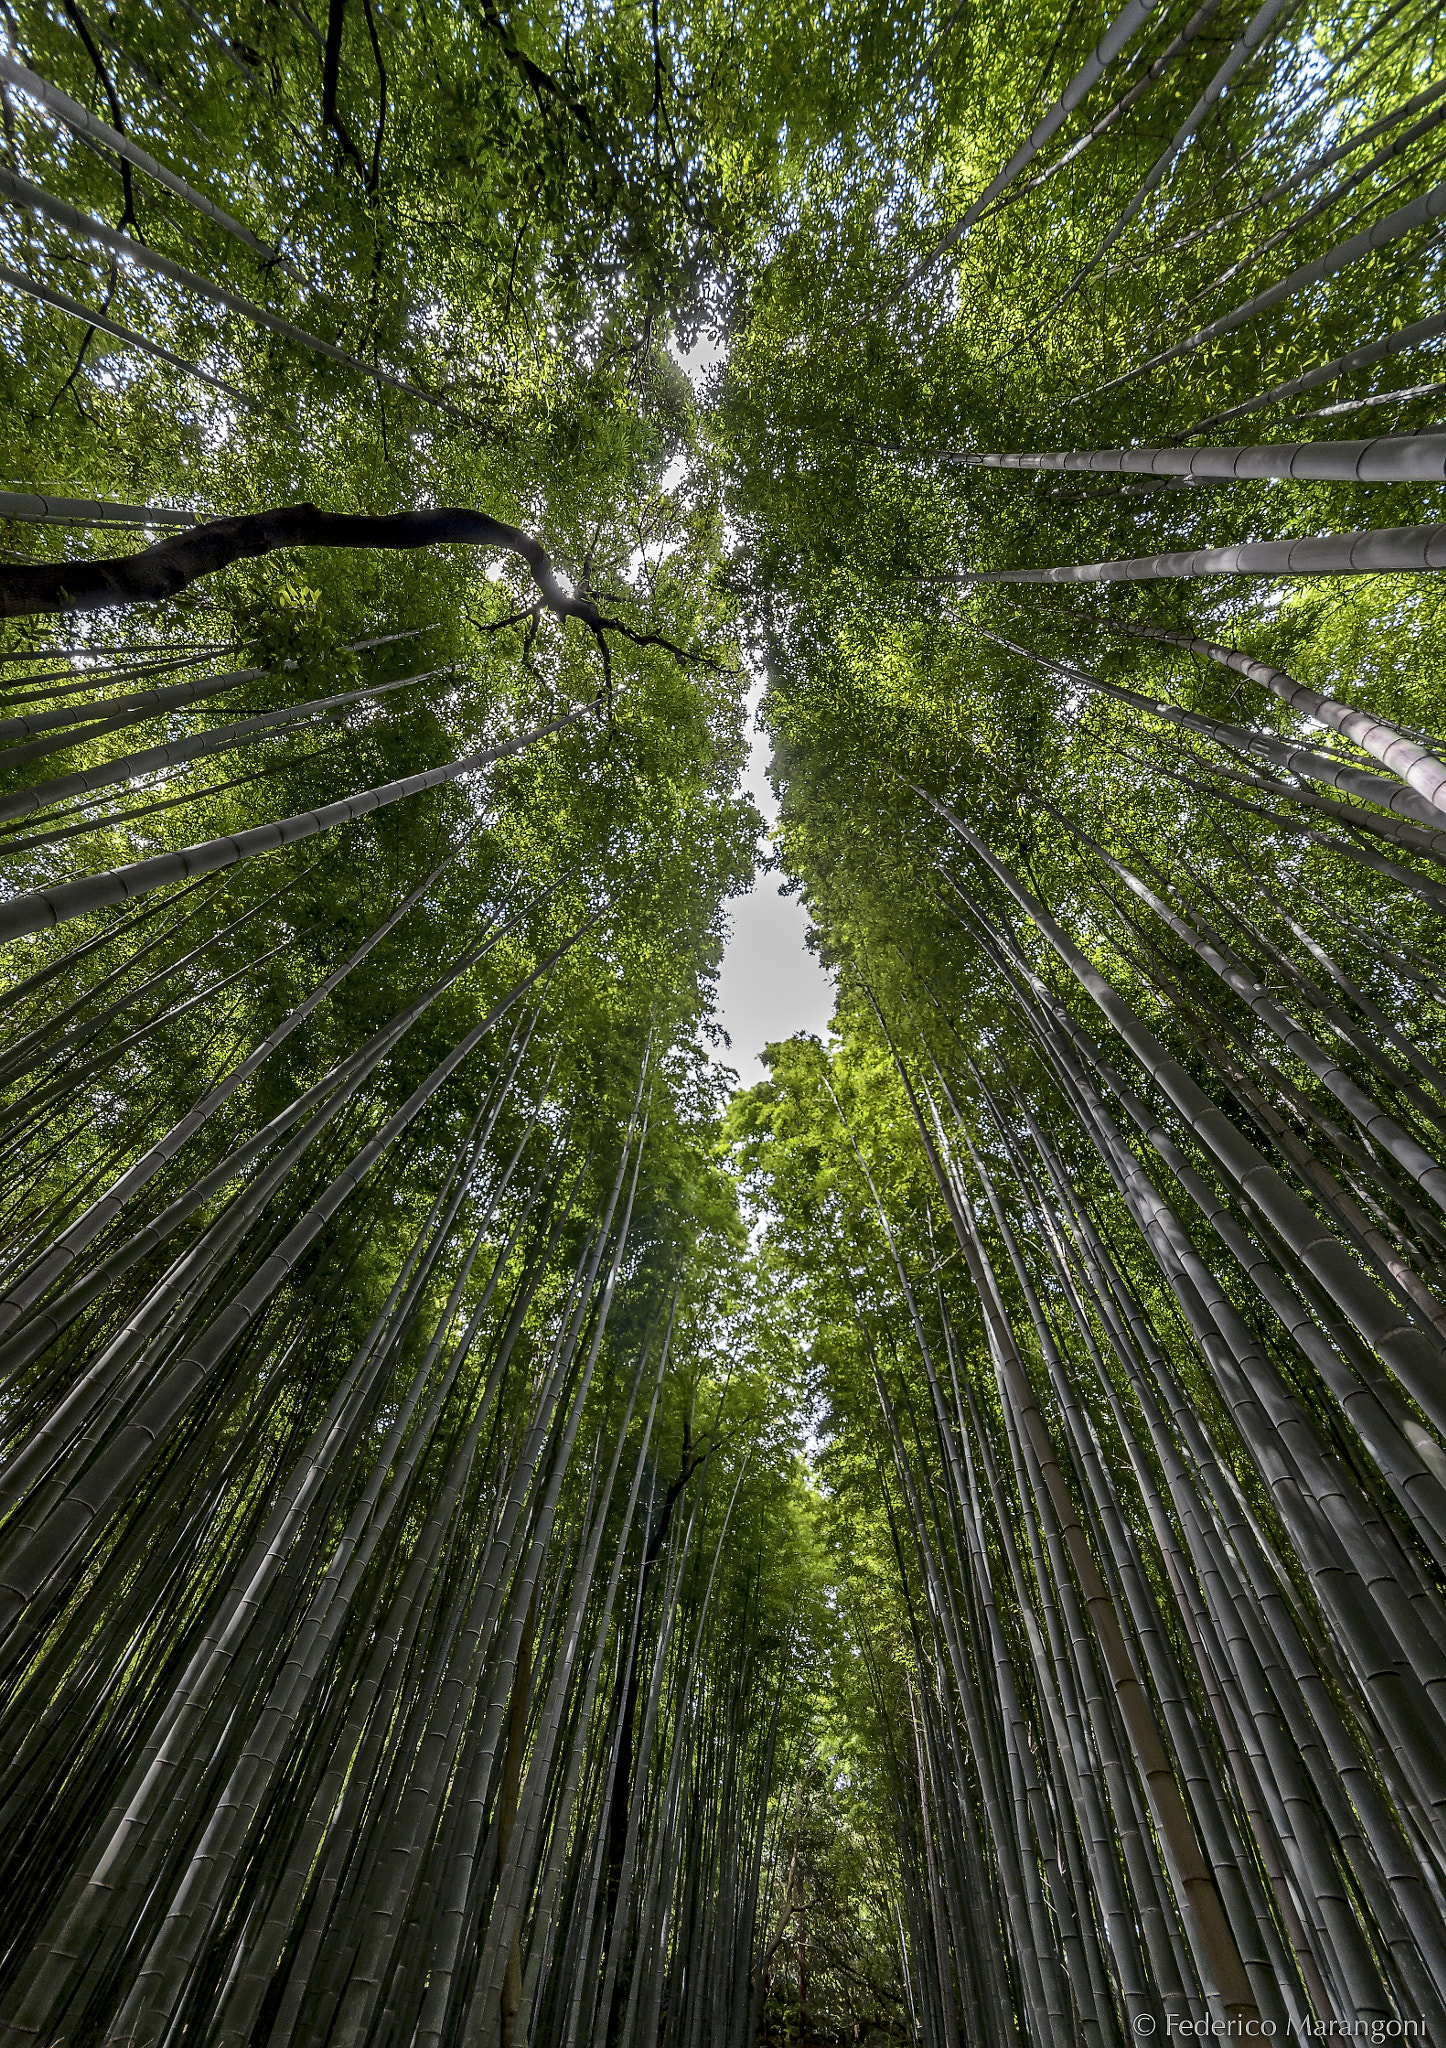 Nikon D7000 + Sigma 8-16mm F4.5-5.6 DC HSM sample photo. Arashiyama bamboo grove photography